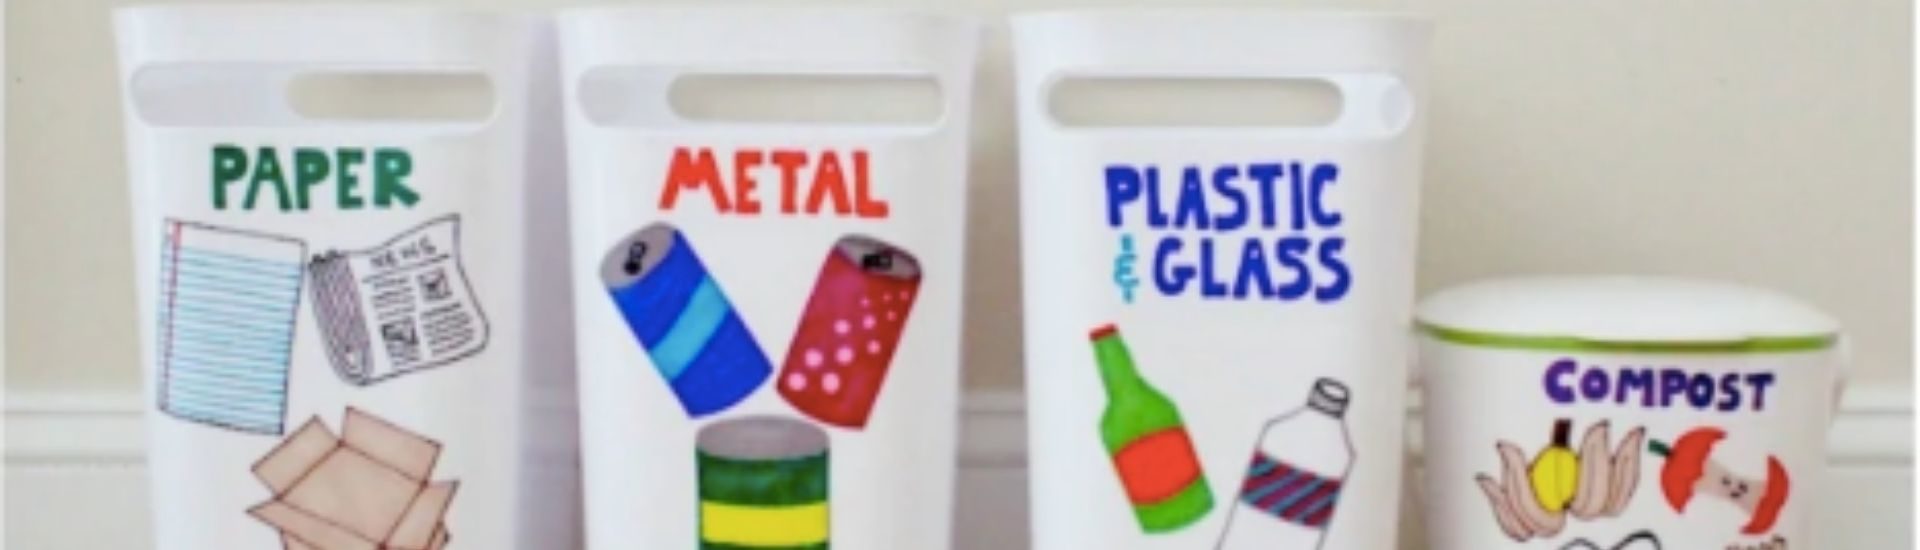 Fotos de recipientes de reciclaje